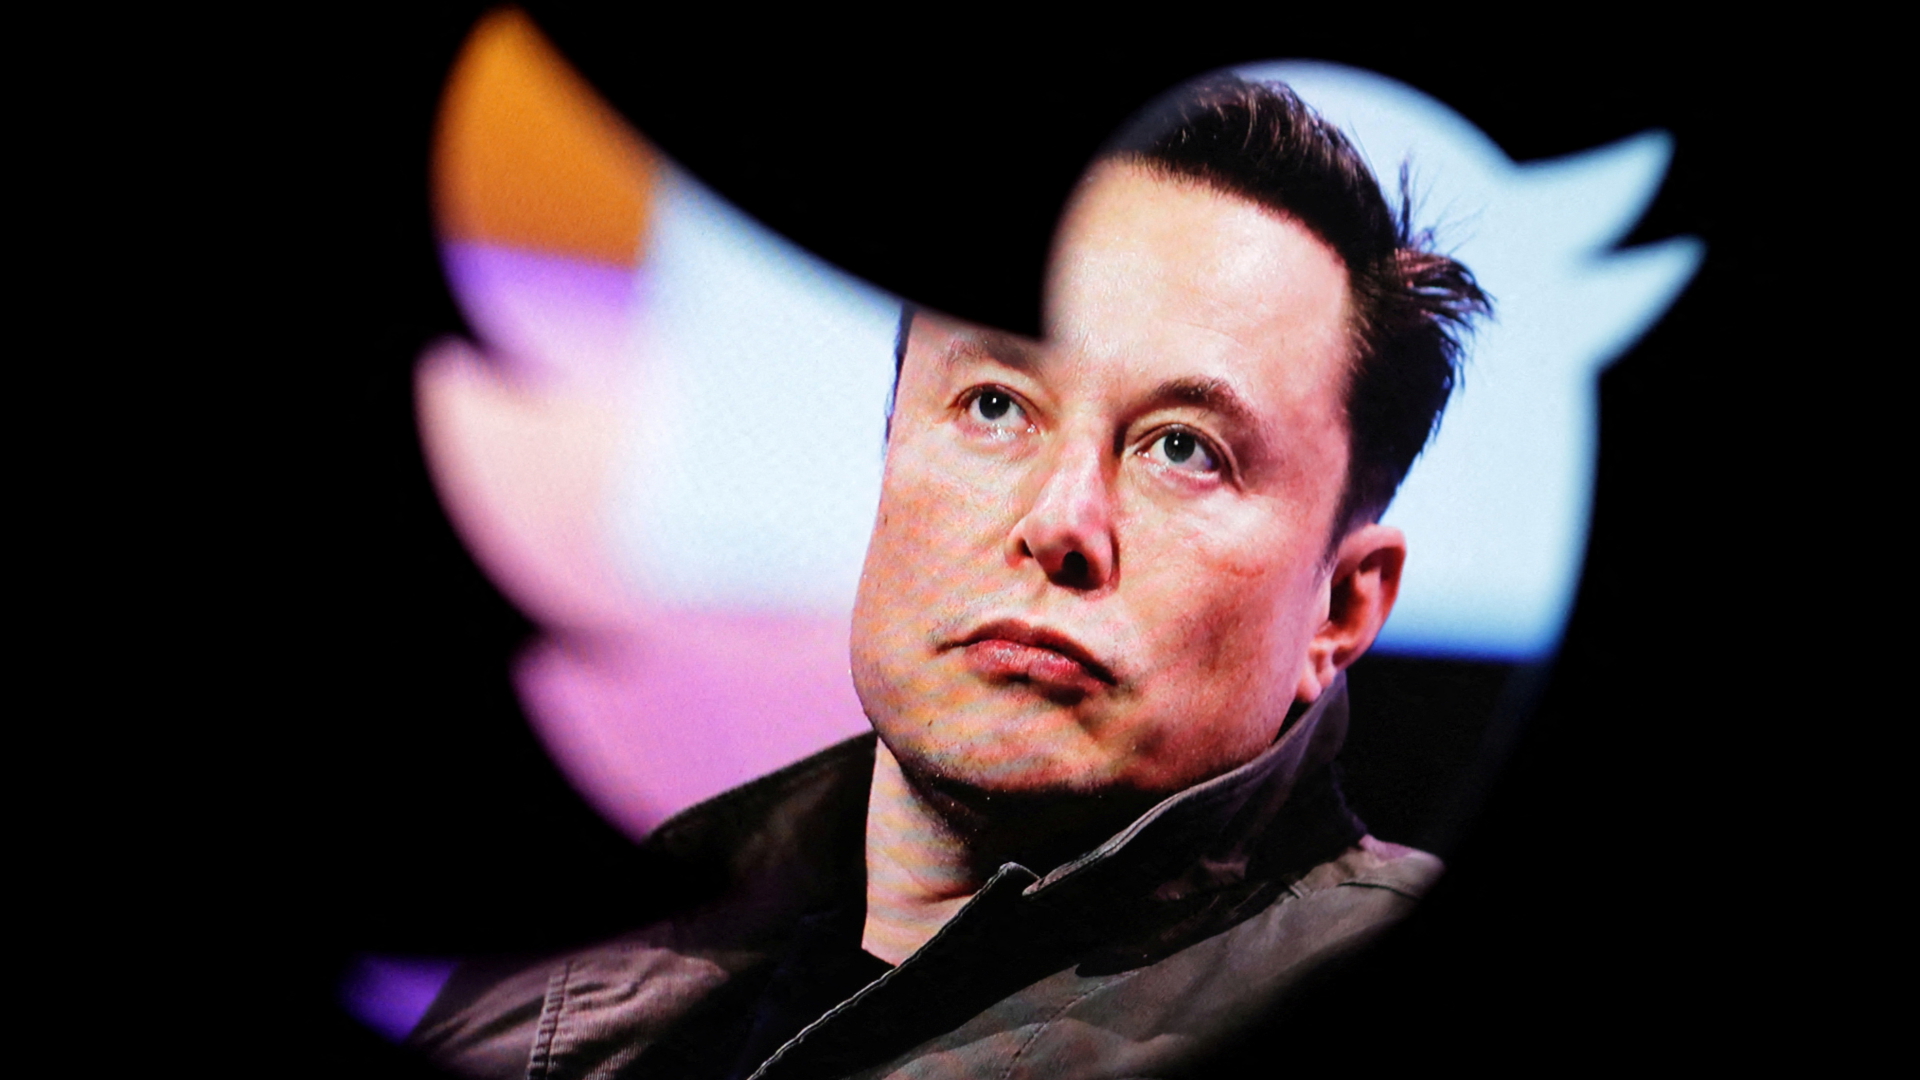 Musk verunglimpft Twitter-Mitarbeiter mit Behinderung